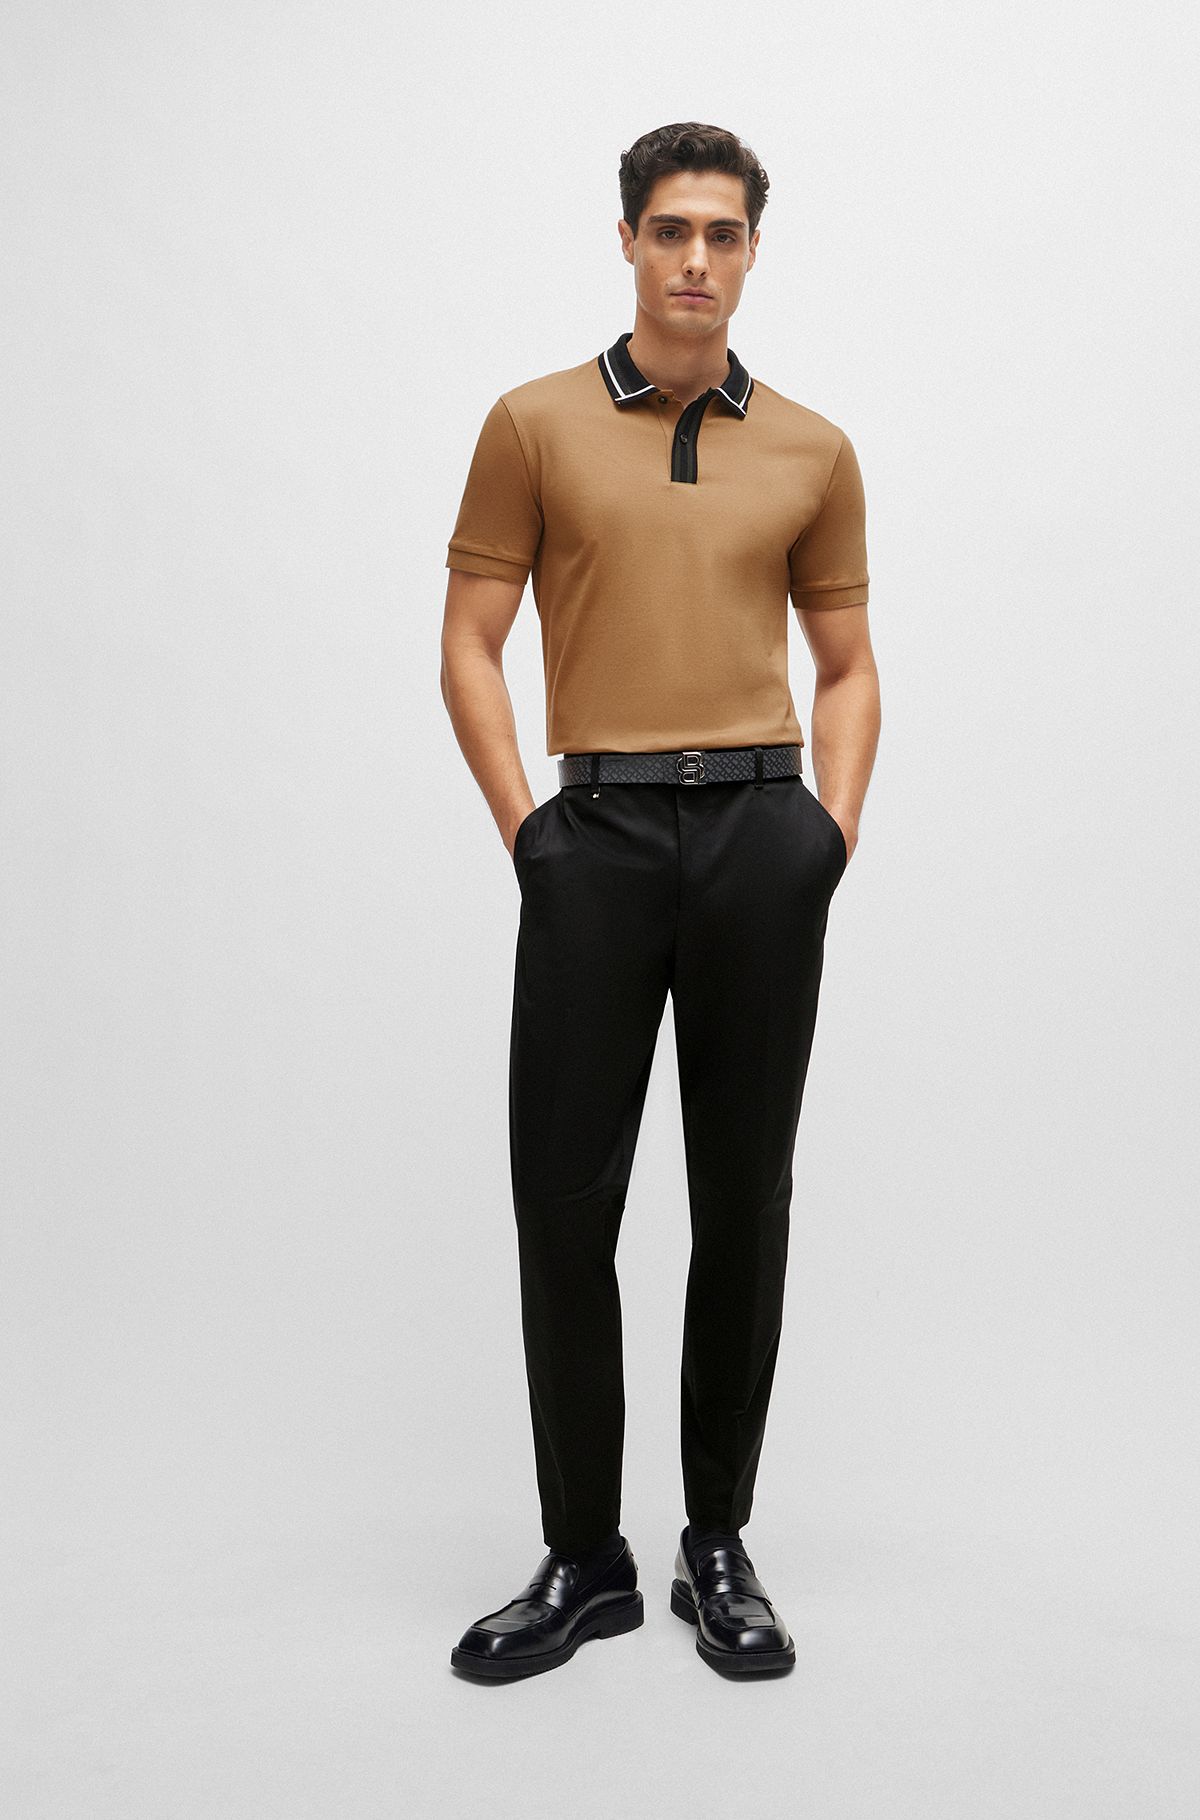 Uohzus Men's Slim Fit Black Dress Pants Formal Pants Dress Slacks for Men :  : Clothing, Shoes & Accessories